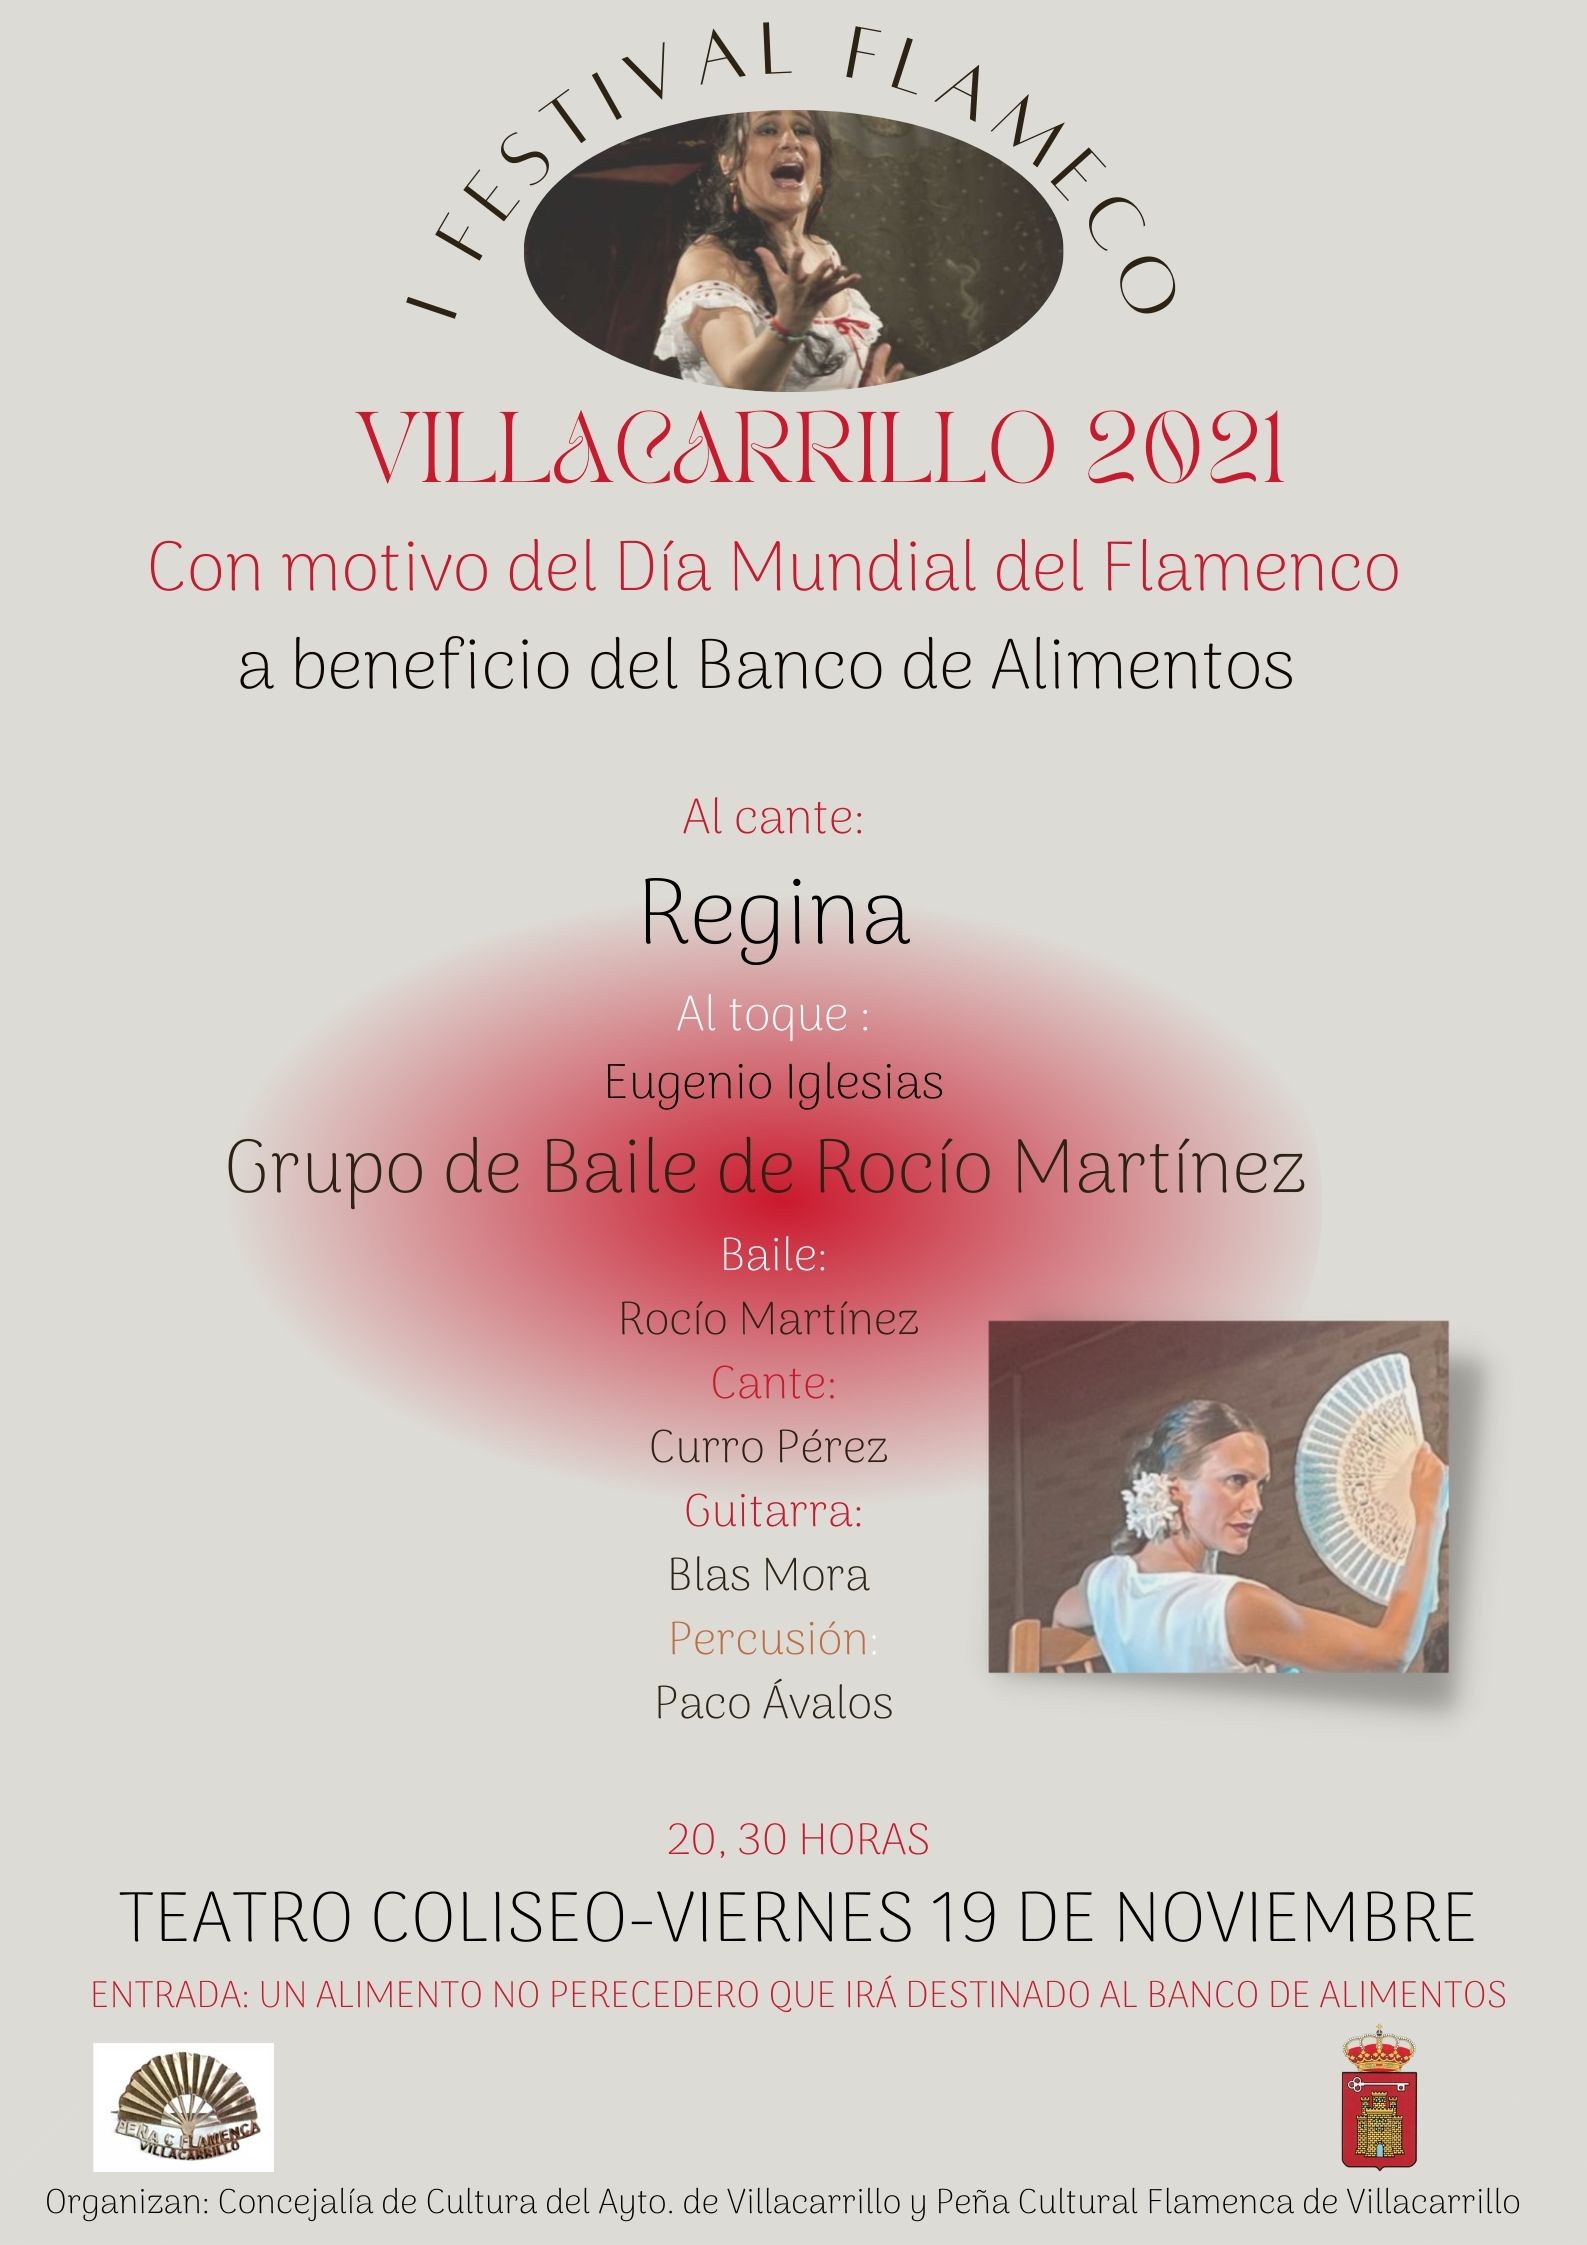 Villacarrillo celebrará el Día Mundial del Flamenco a lo grande y a beneficio del Banco de Alimentos